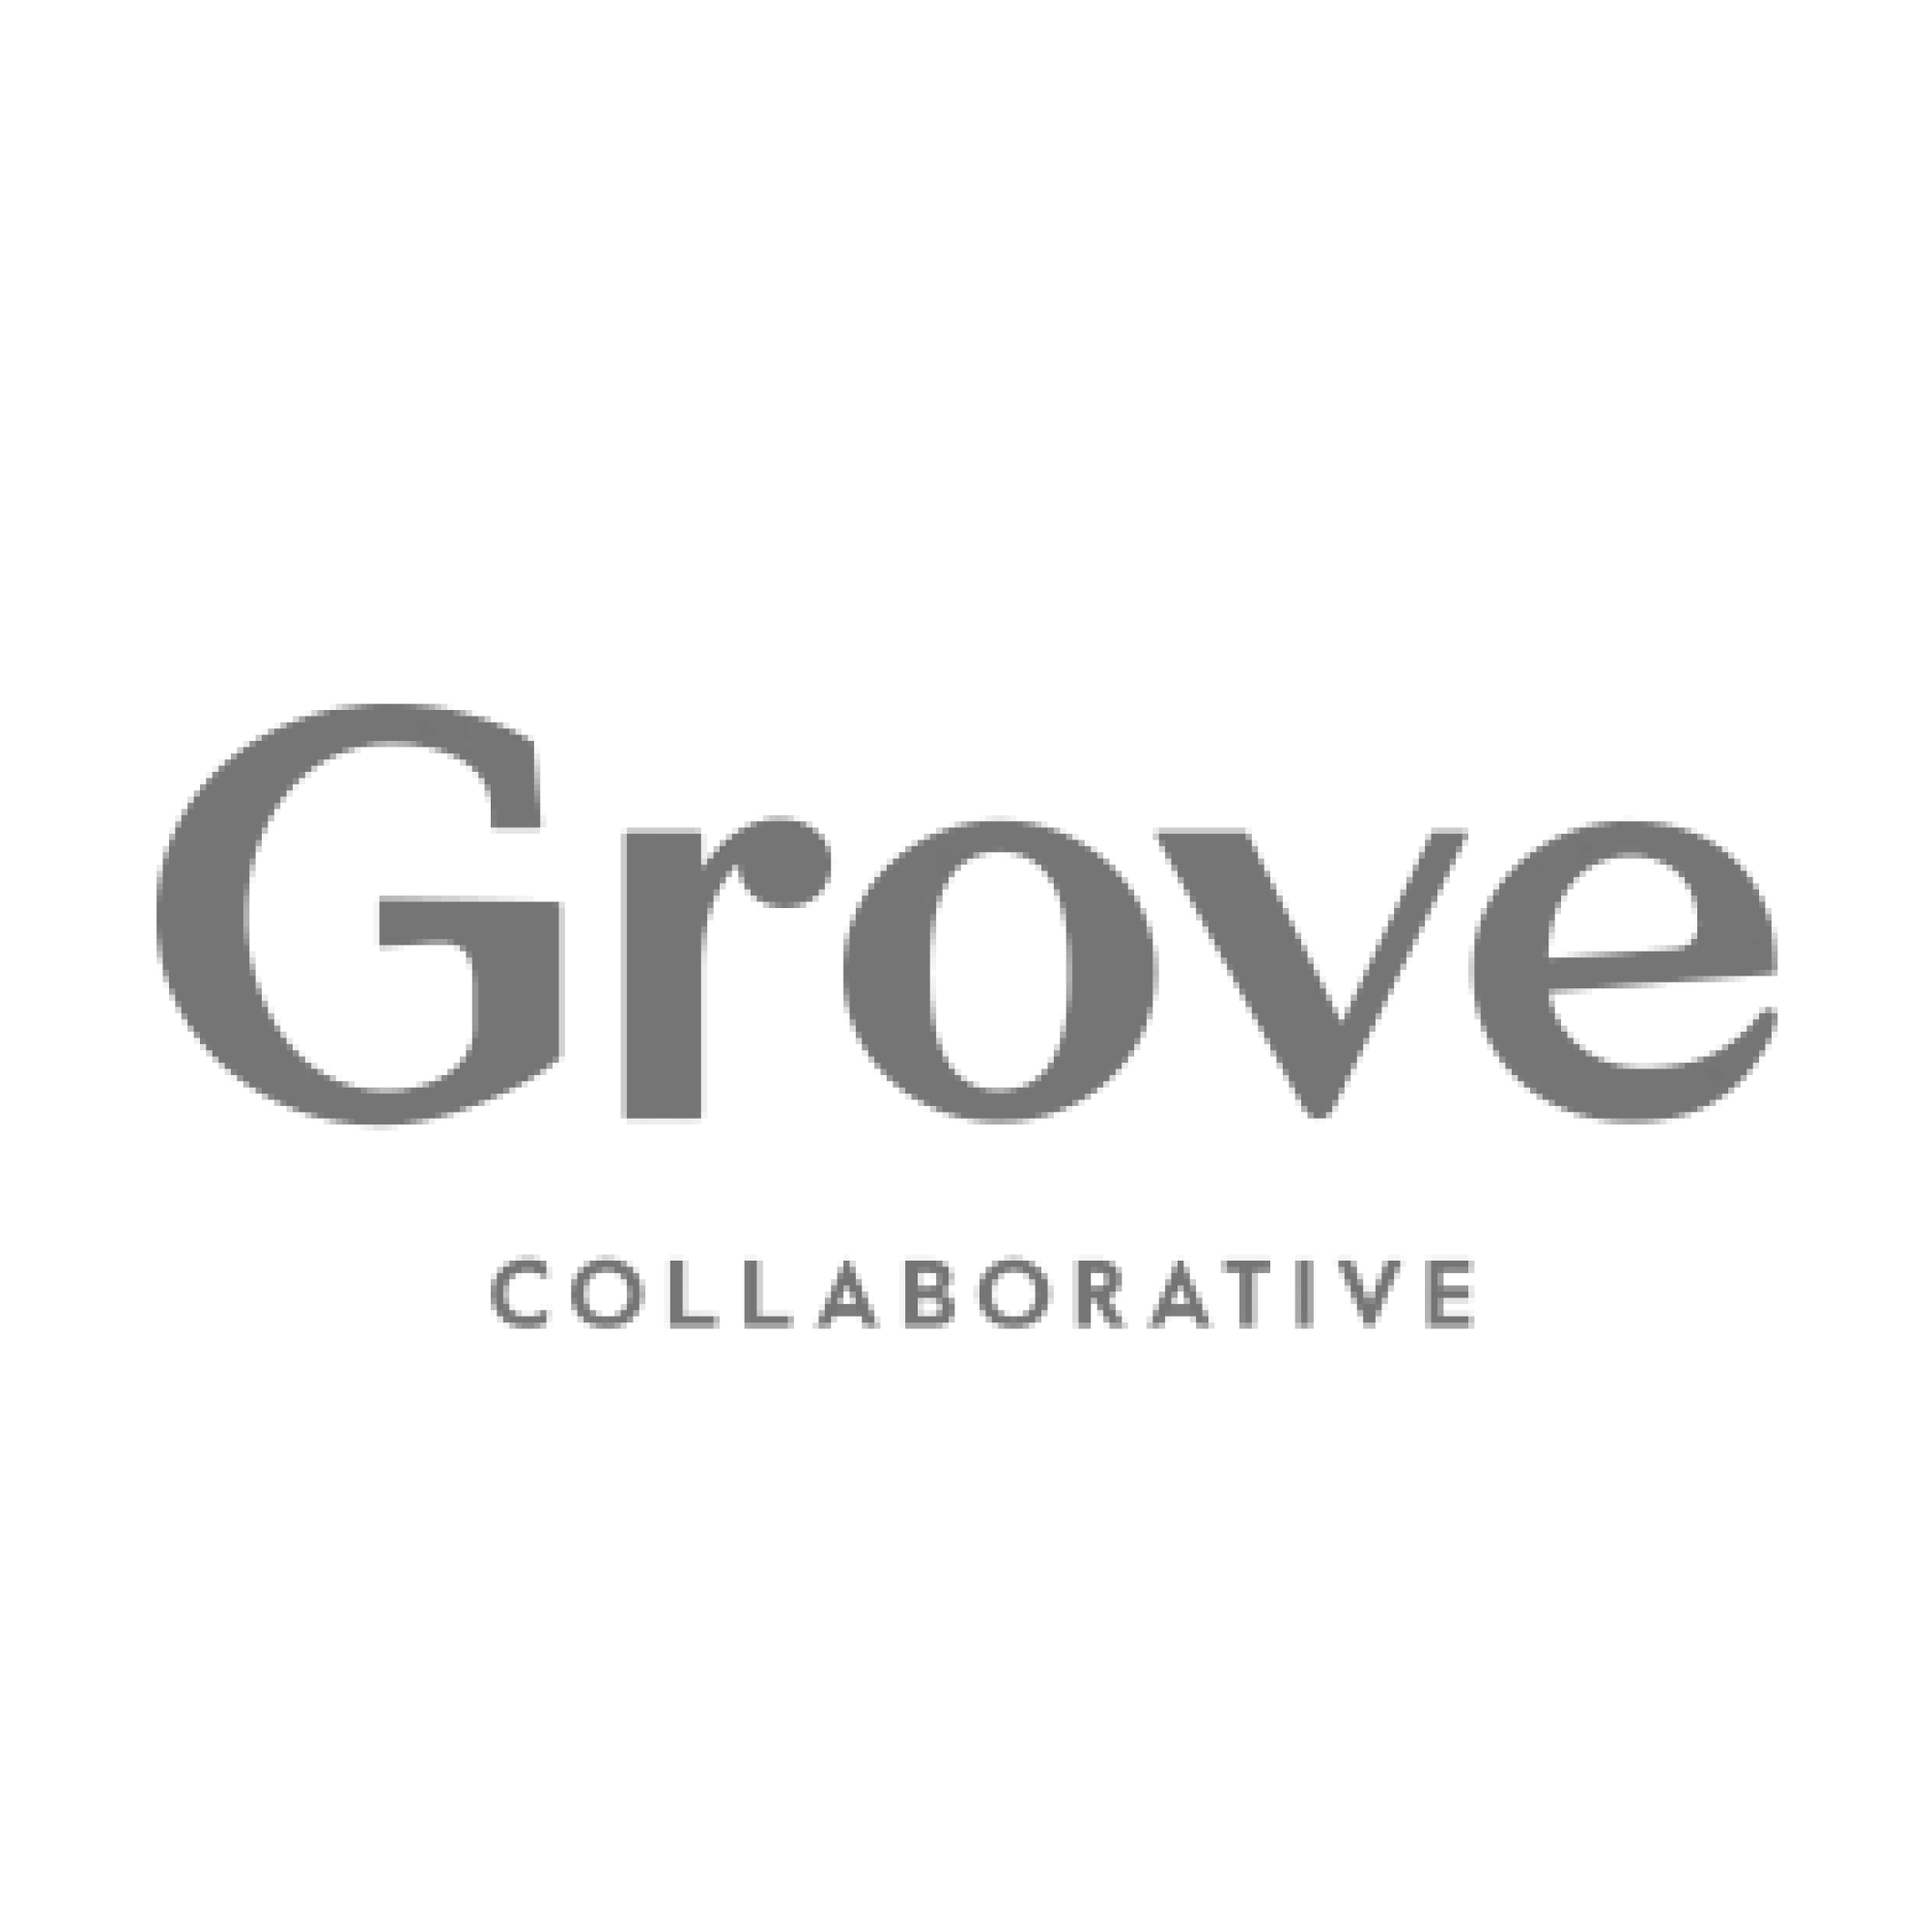 grove collaborative